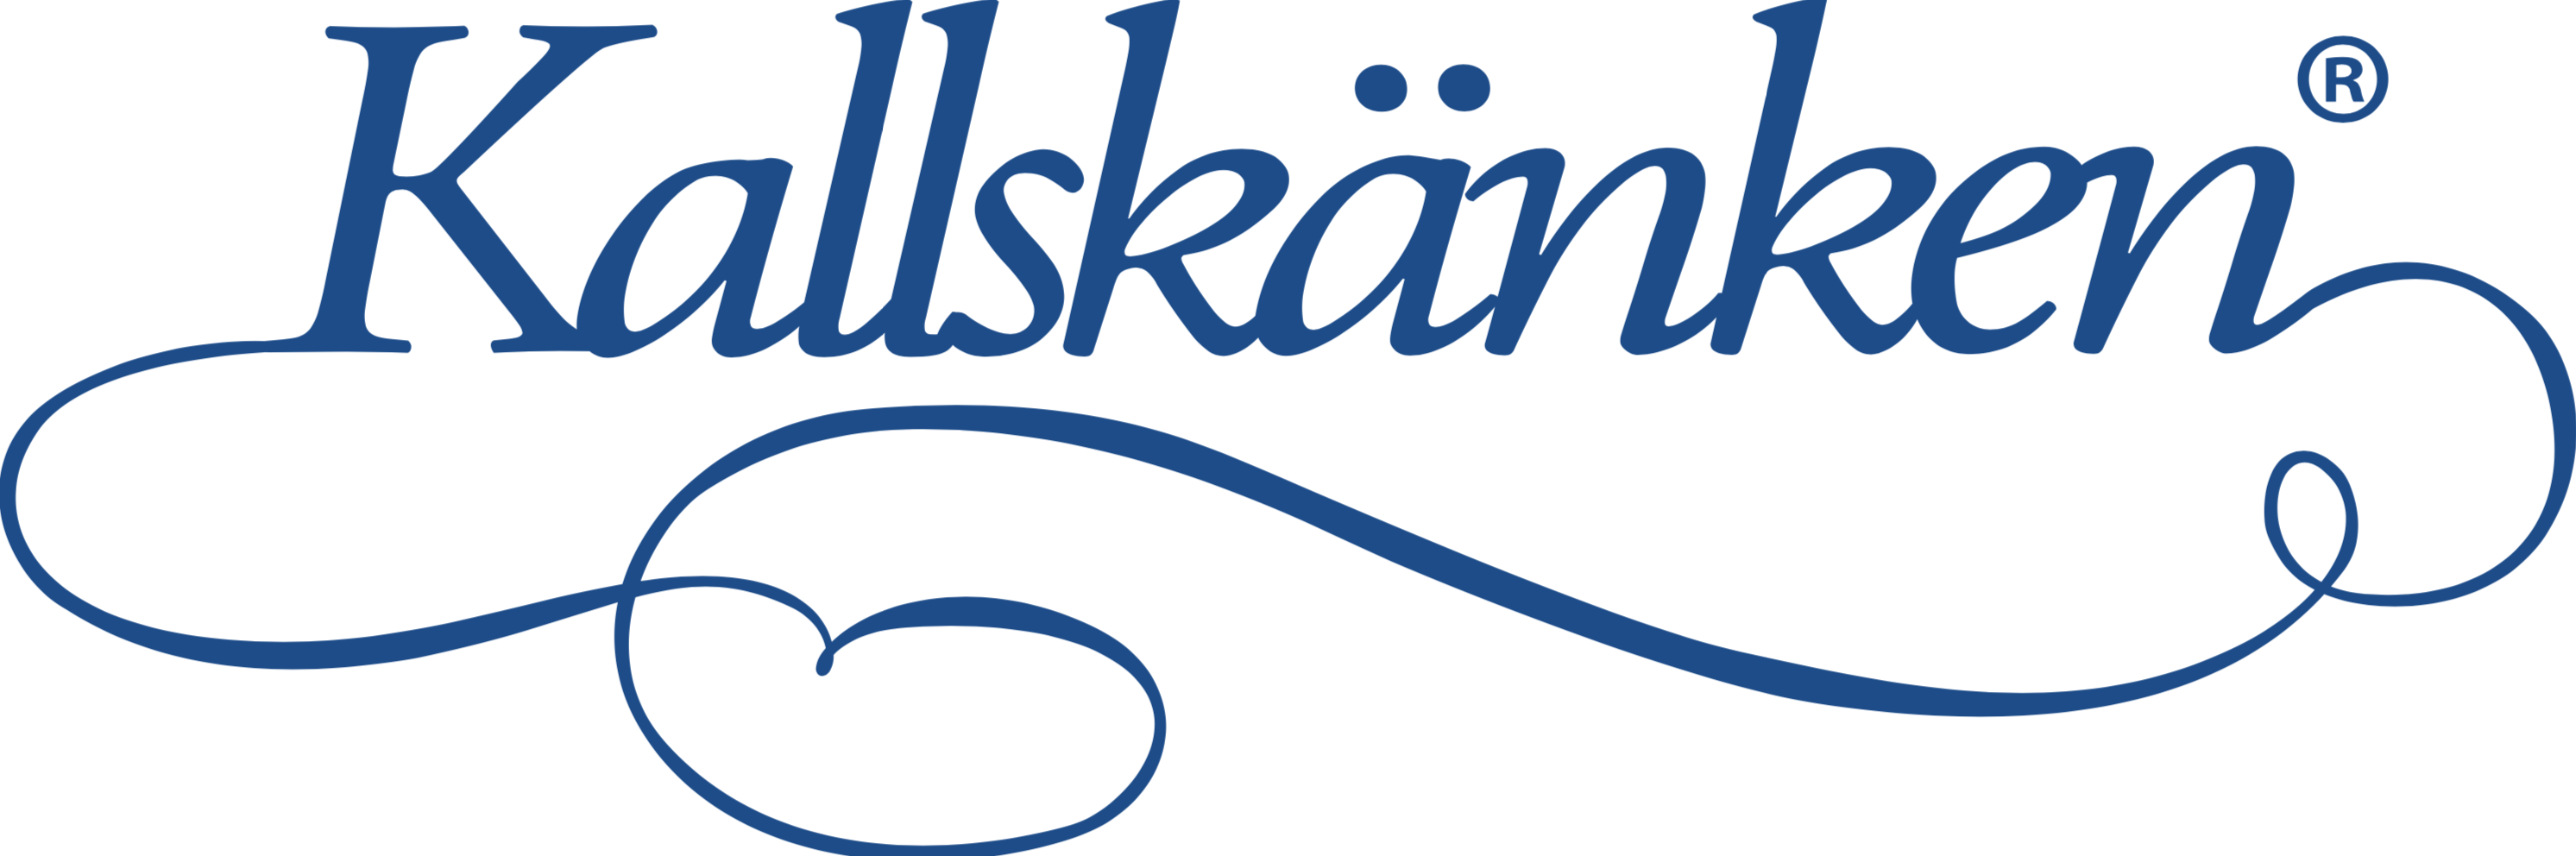 Kallskänken logo